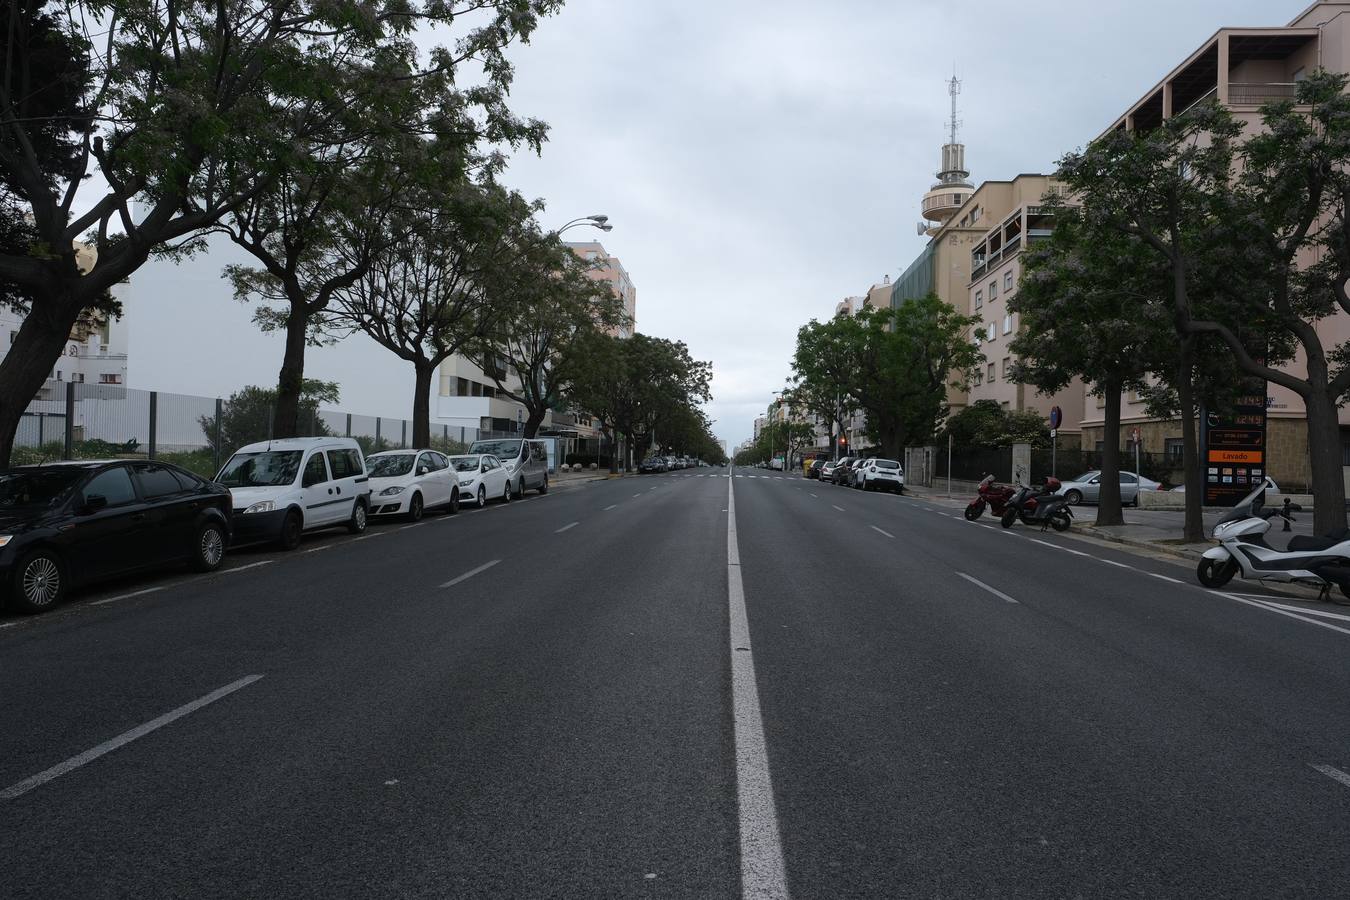 FOTOS: Coronavirus y confinamiento en Cádiz. Calles y plazas el miércoles 1 de abril 2020